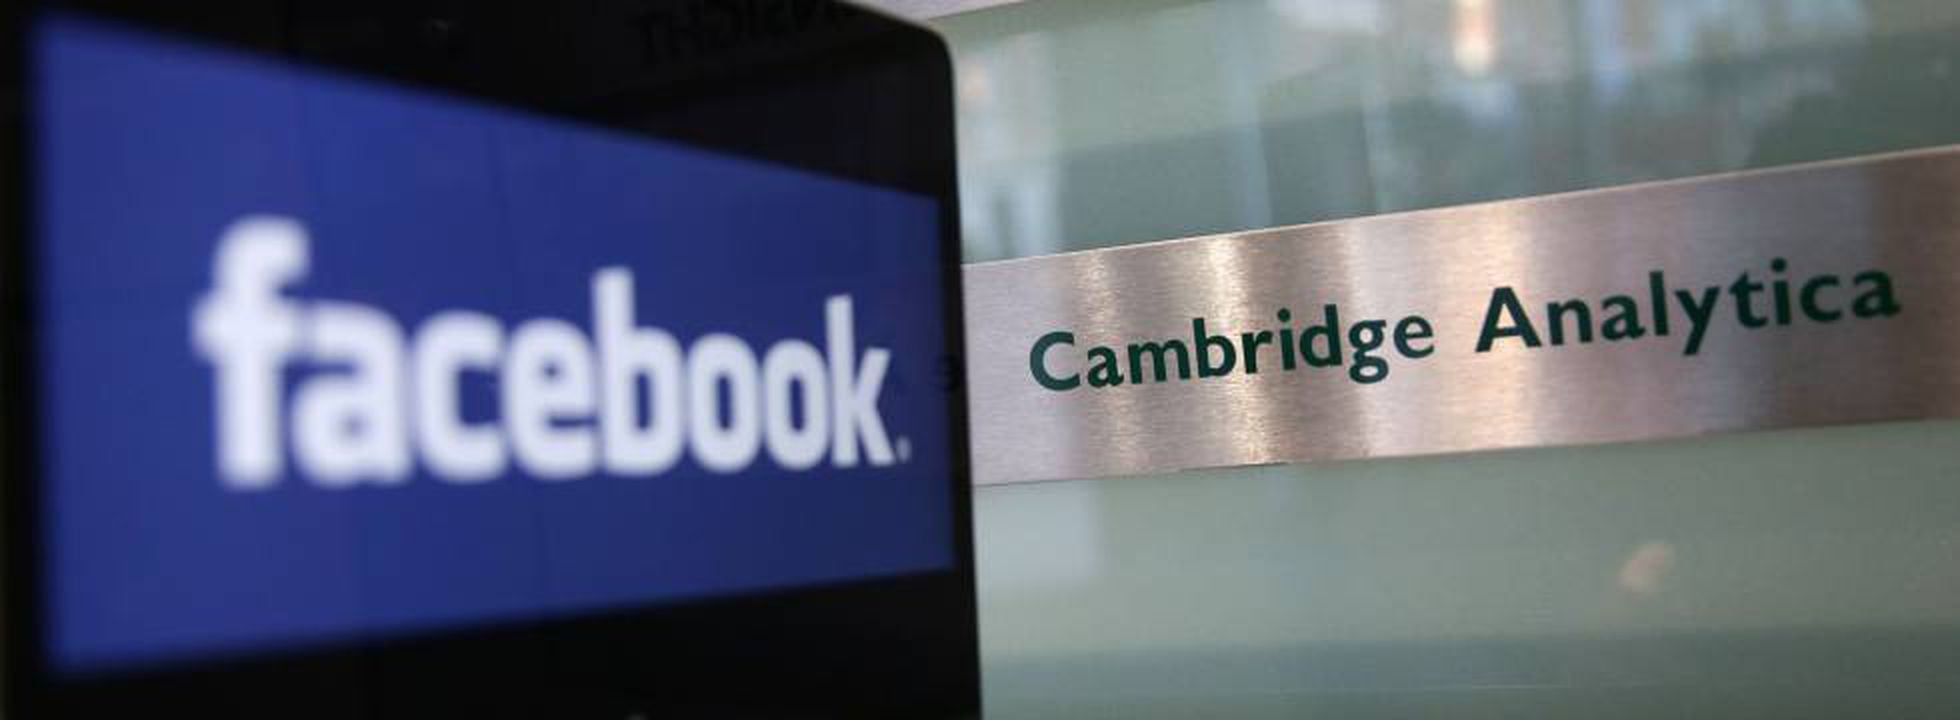 Brasil multa Facebook em 6,6 milhões de reais pelo vazamento de dados no  caso Cambridge Analytica | Tecnologia | EL PAÍS Brasil